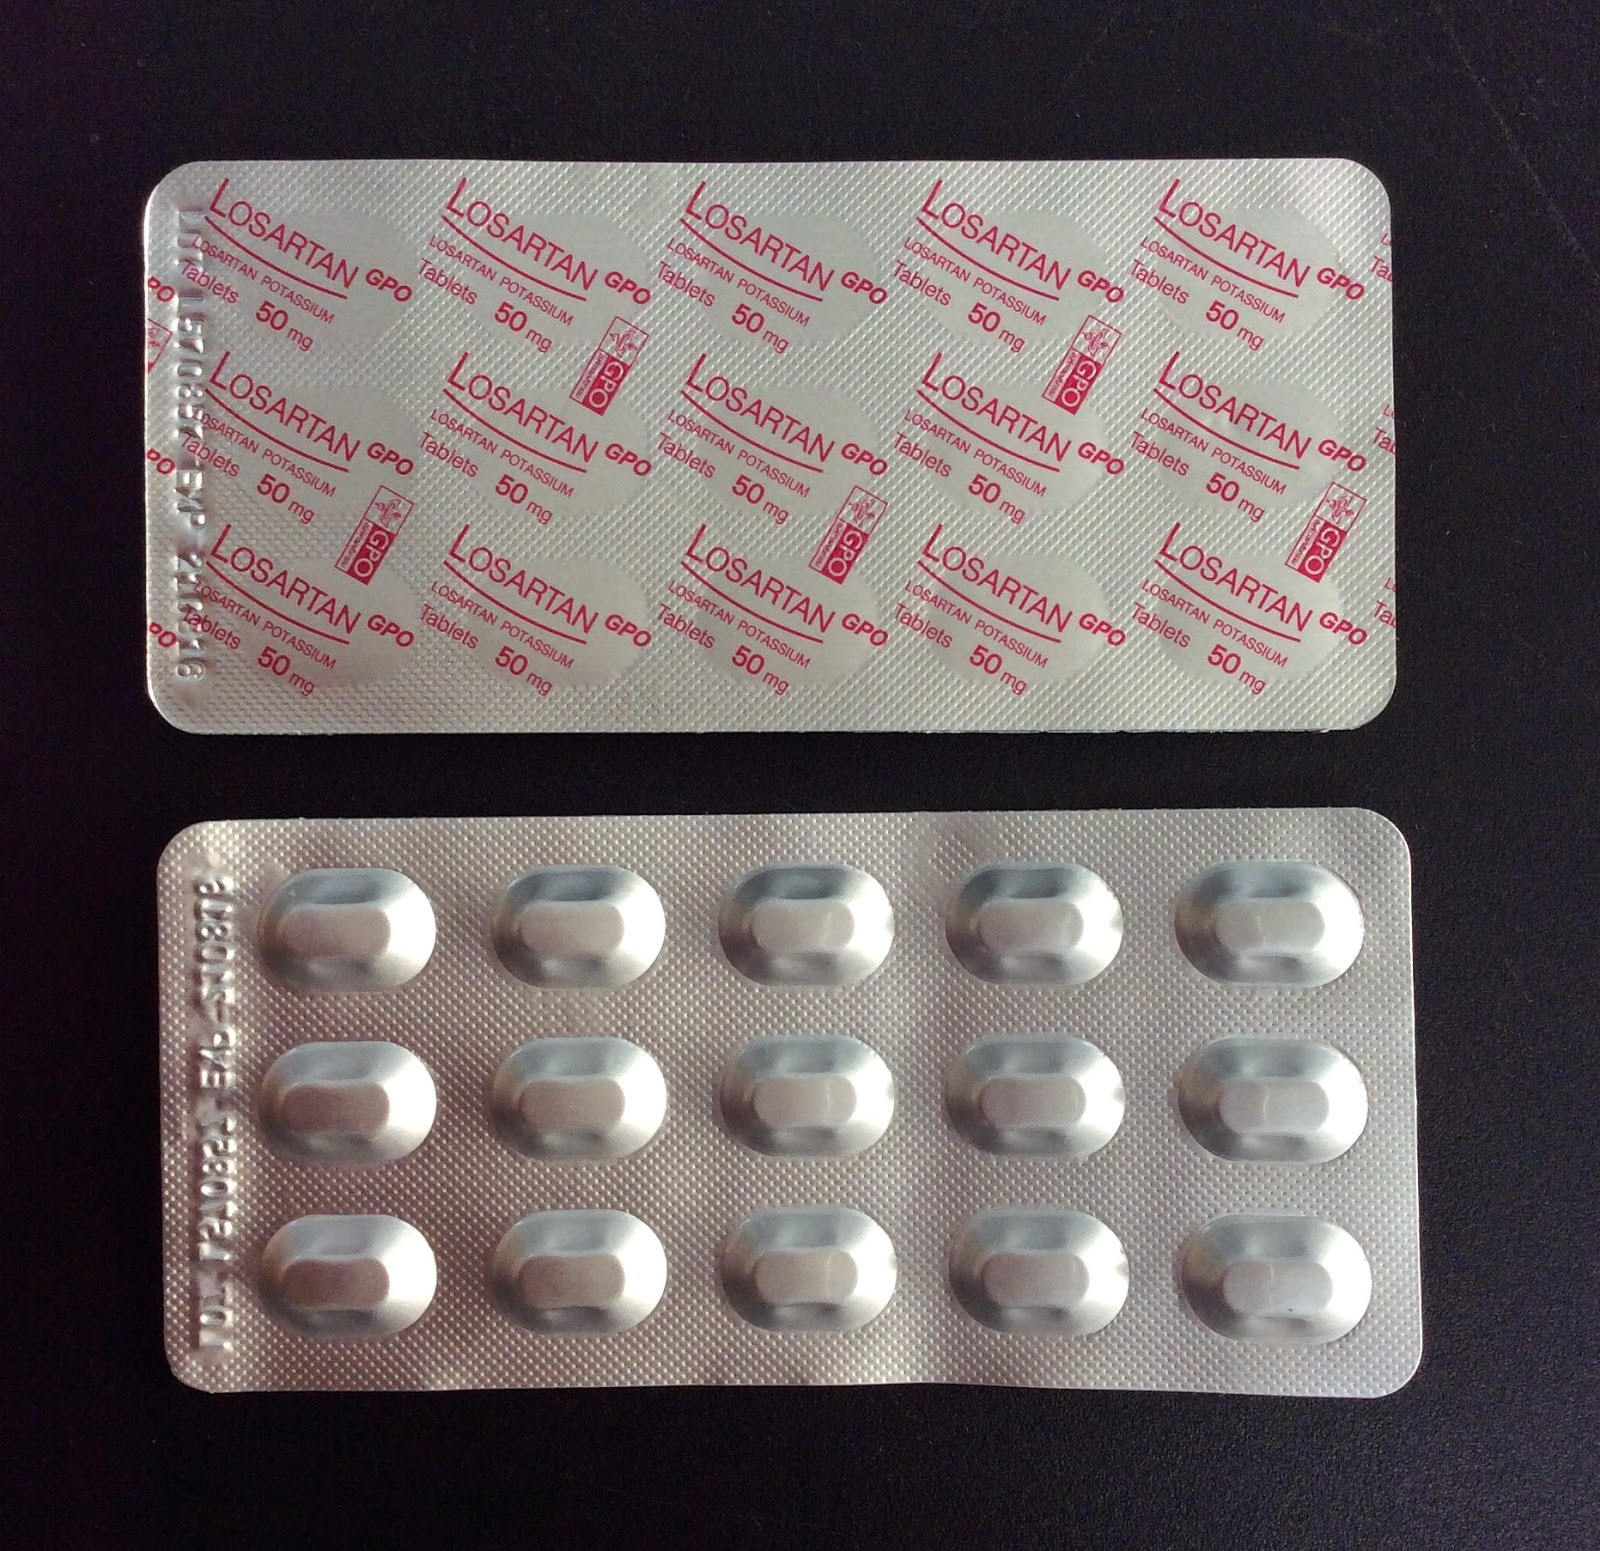 ยา lexapro 10 mg a low dose